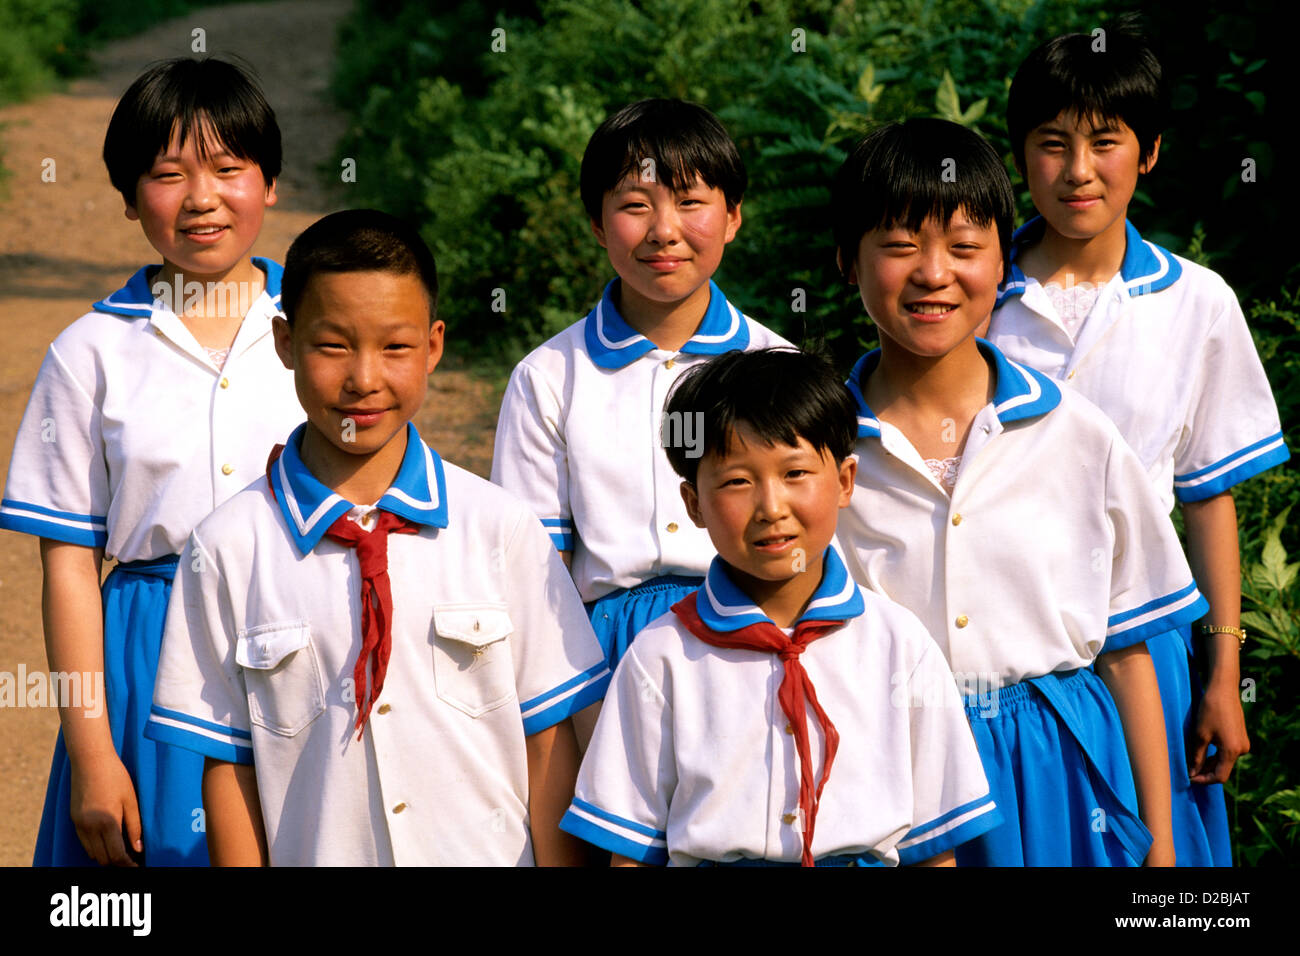 China, Beijing. Portrait Of Schoolchildren In Uniforms Stock Photo